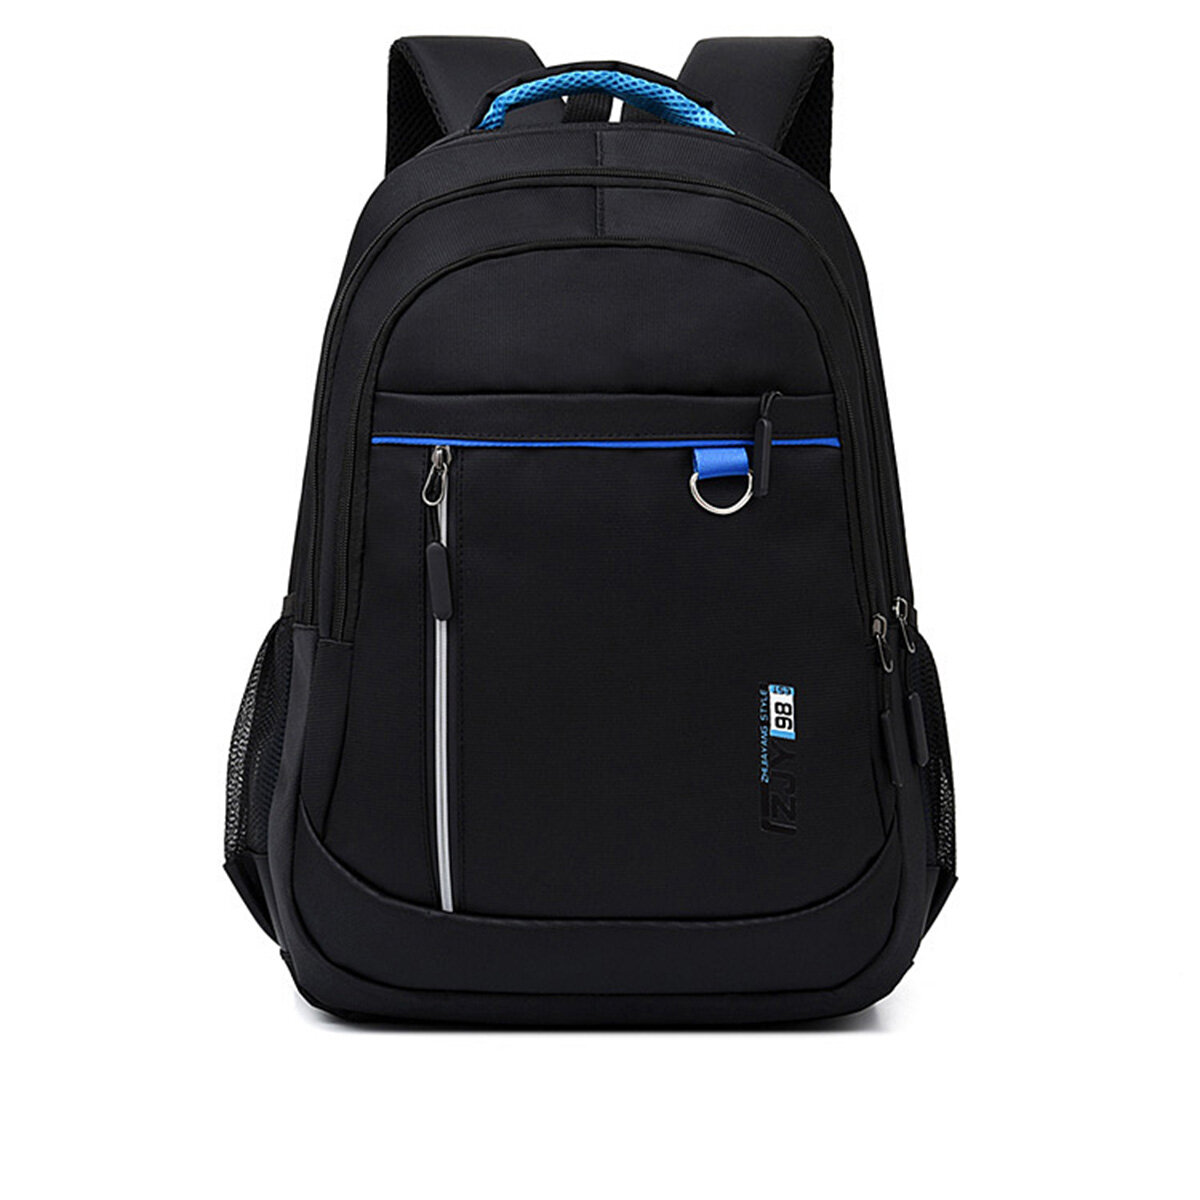 Casual 15.6 pouces sac à dos anti-vol étanche 15 pouces sac pour ordinateur portable camping voyage sac à dos